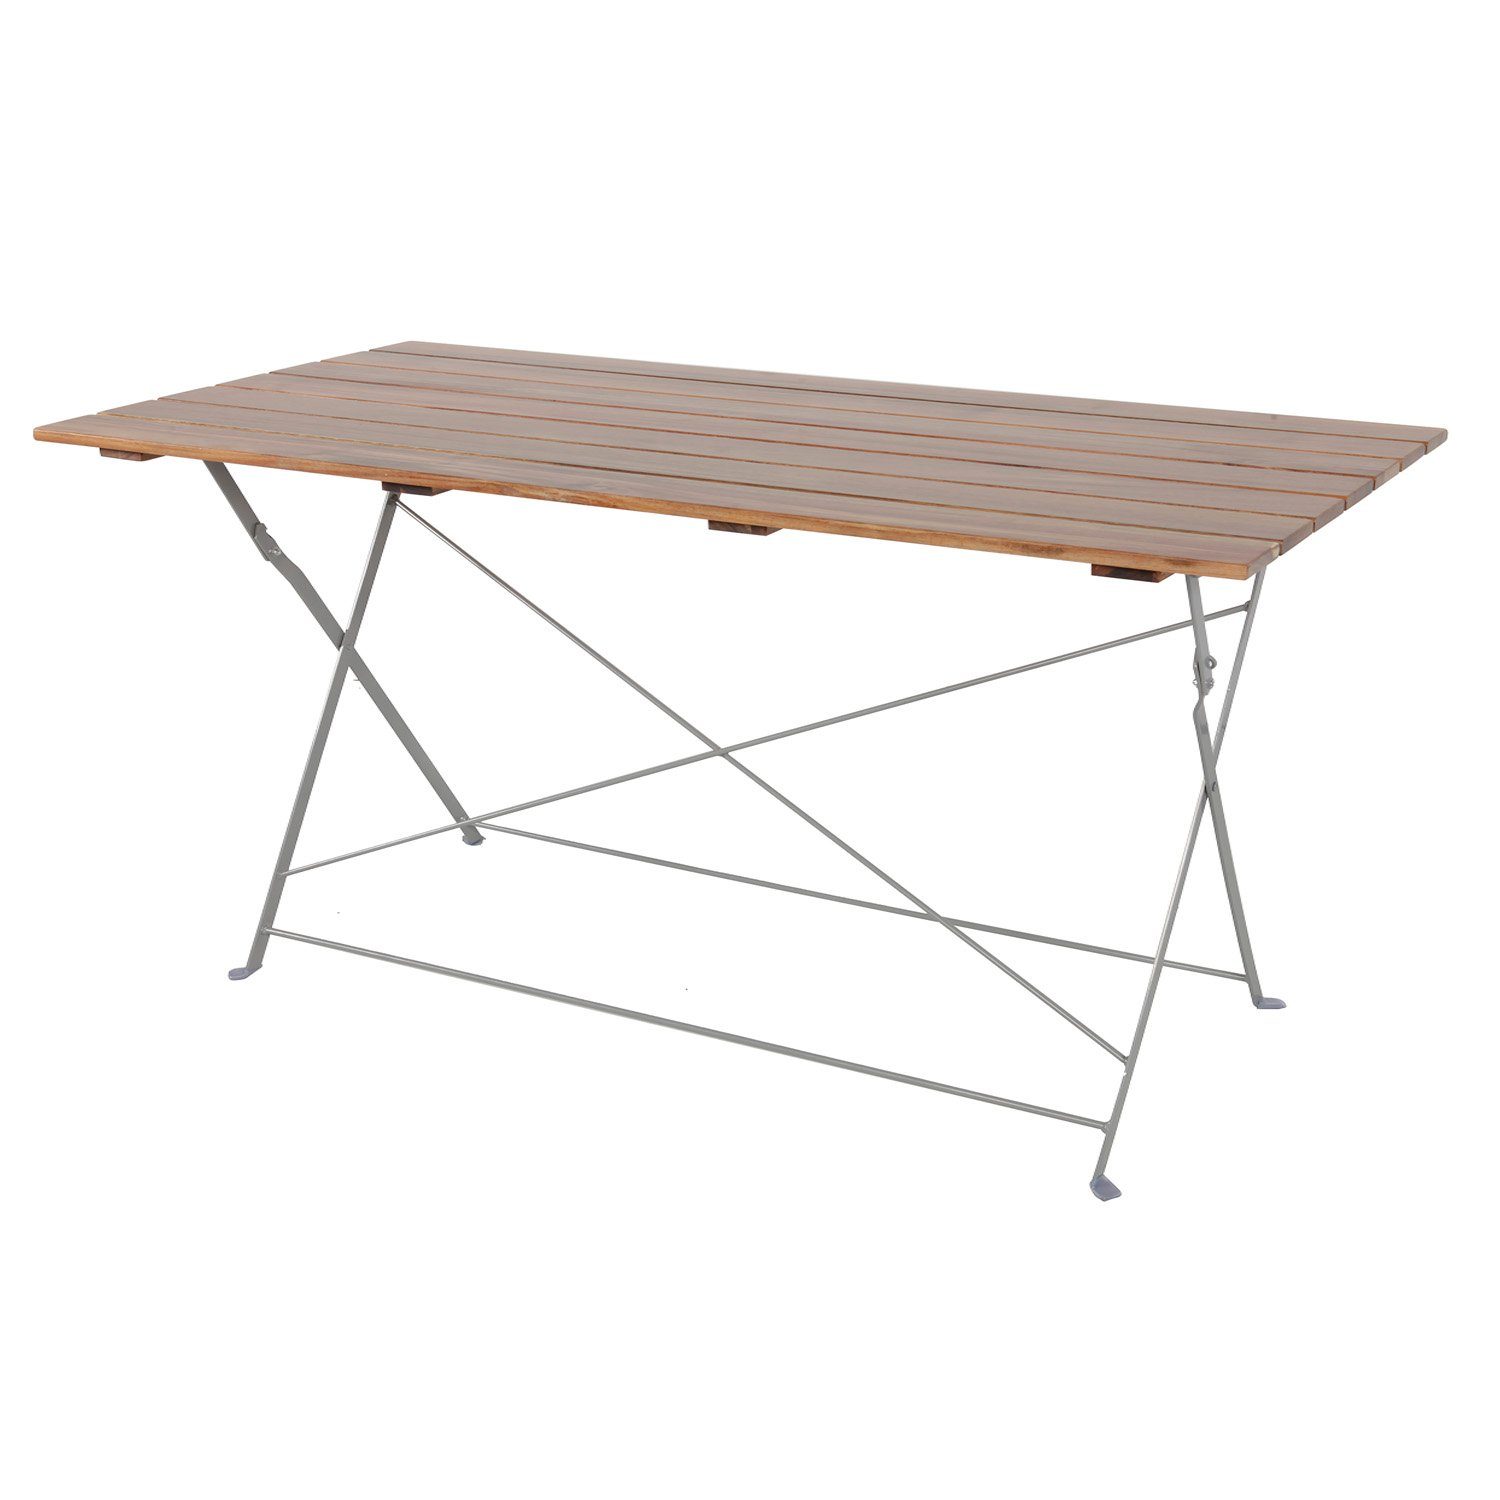 Stahl Gartentisch klappbar Biergarten Klapptisch 120x70cm Esstisch Akazie INDA-Exclusiv Tisch Küchentisch